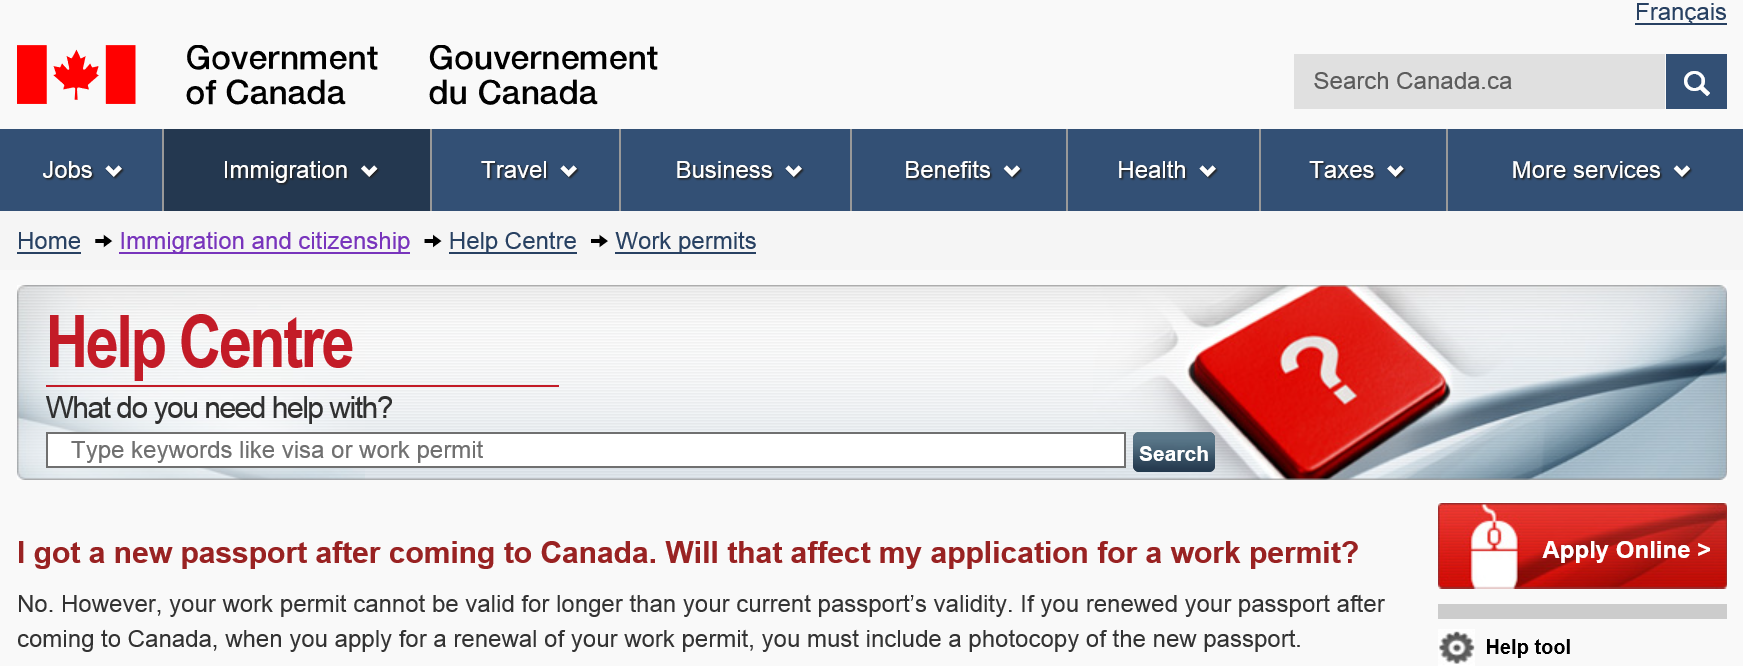 加拿大的签证学习许可工作许可的有效期不能超